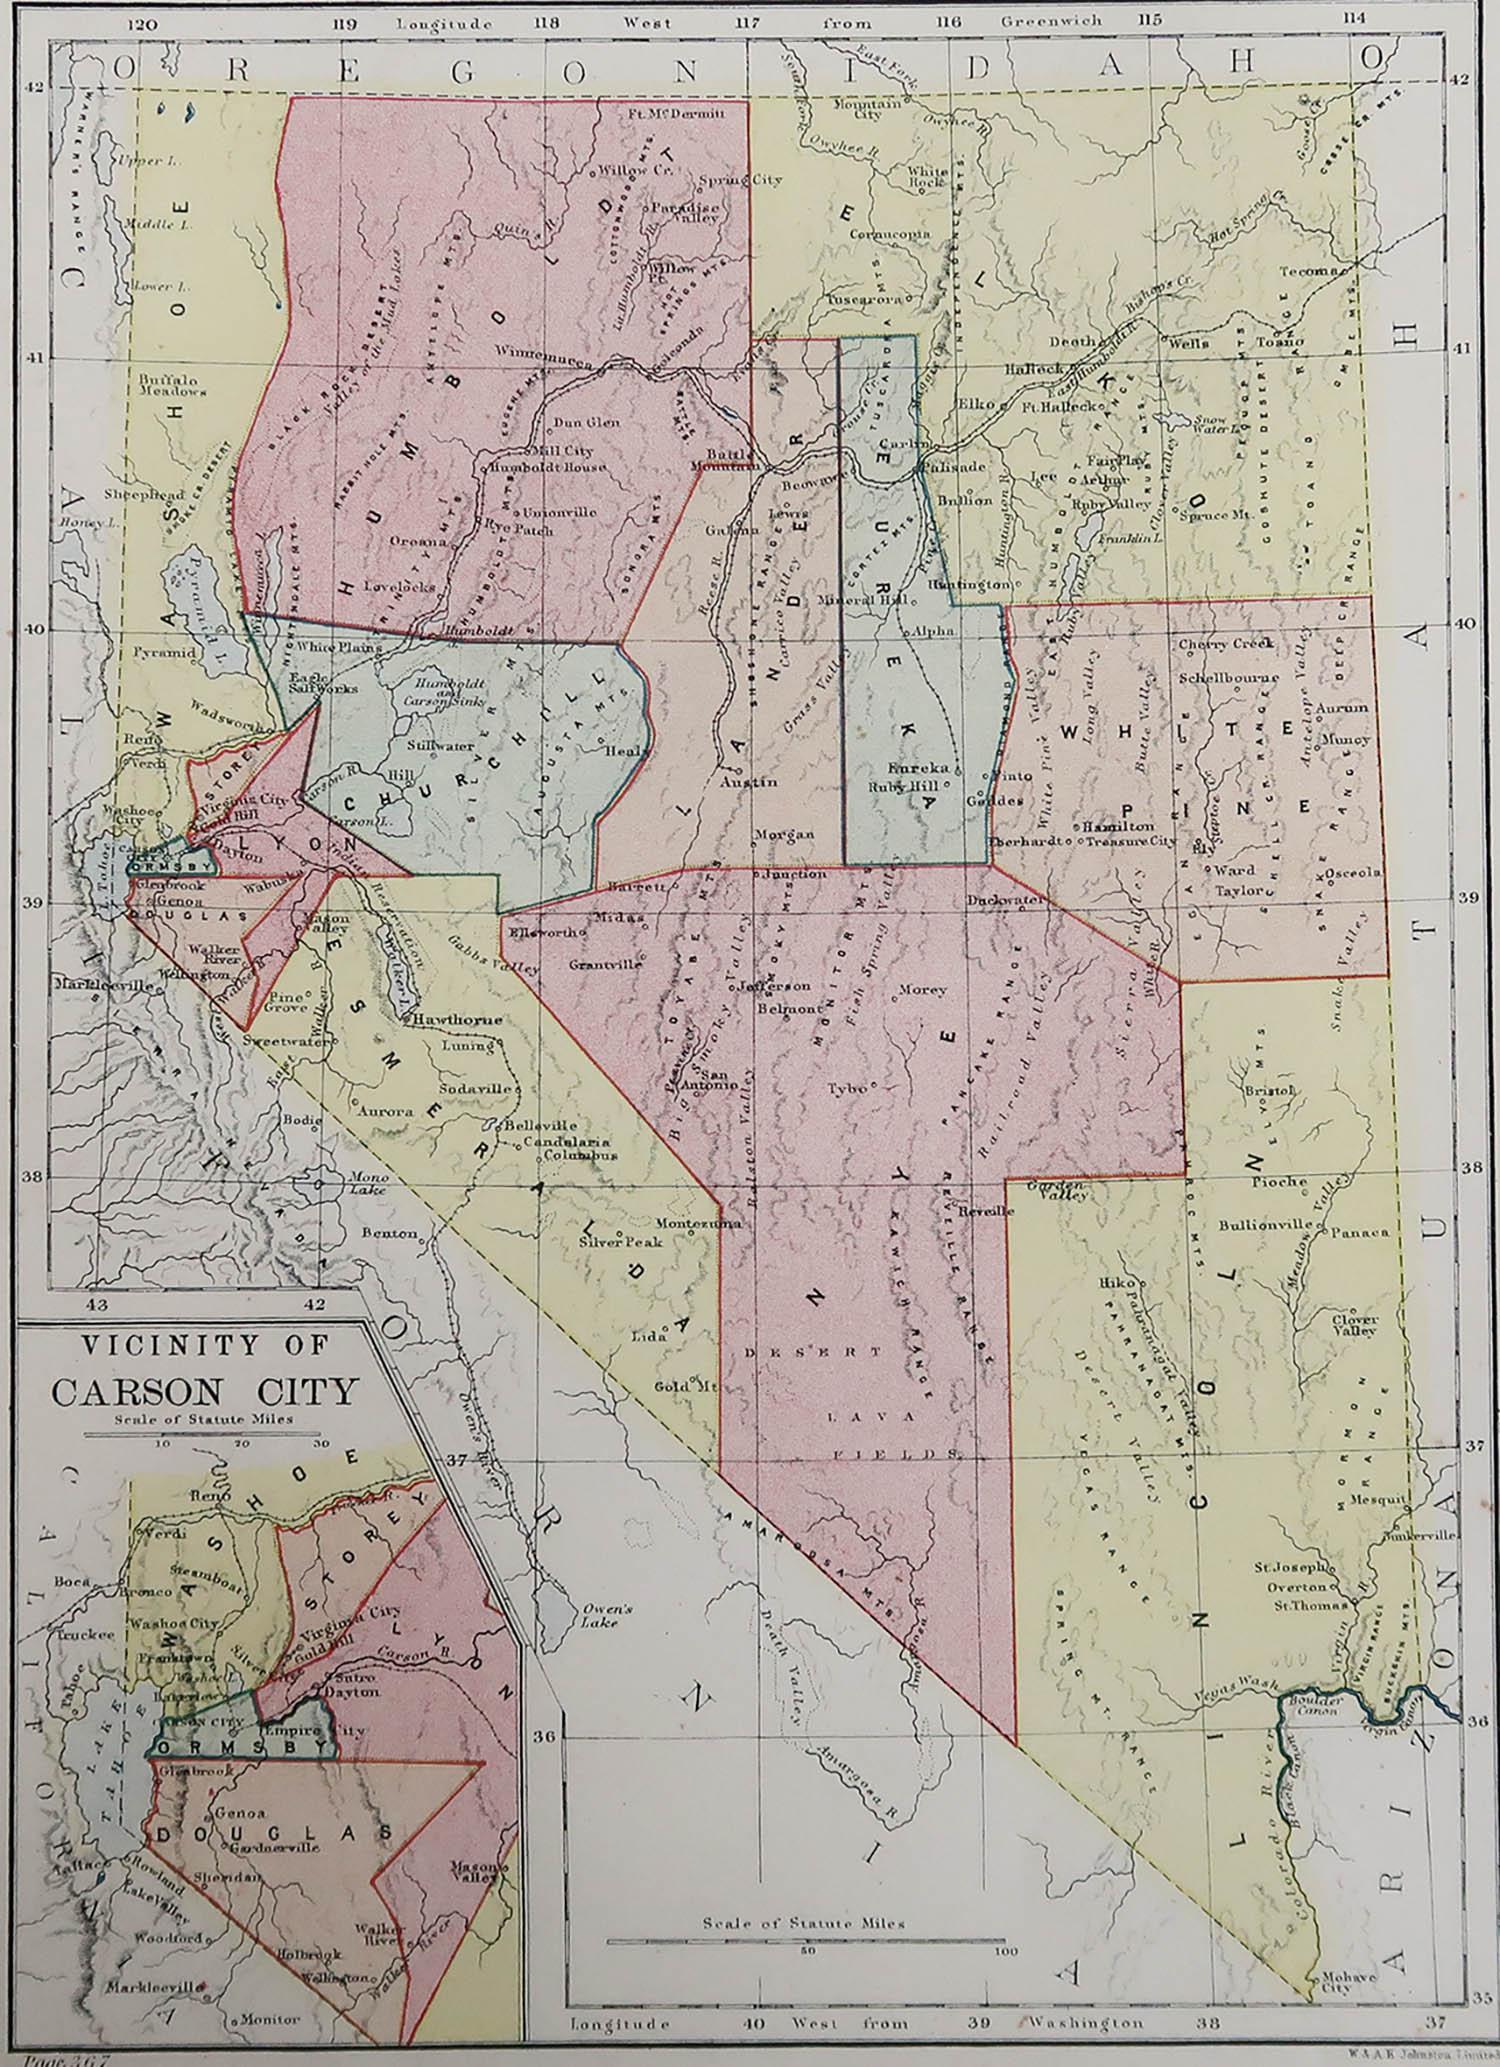 Excellente carte du Nevada

Dessiné et gravé par W. & K.K. Johnston

Publié par A.I.C. C., Edinburgh.

Couleur originale

Non encadré.








